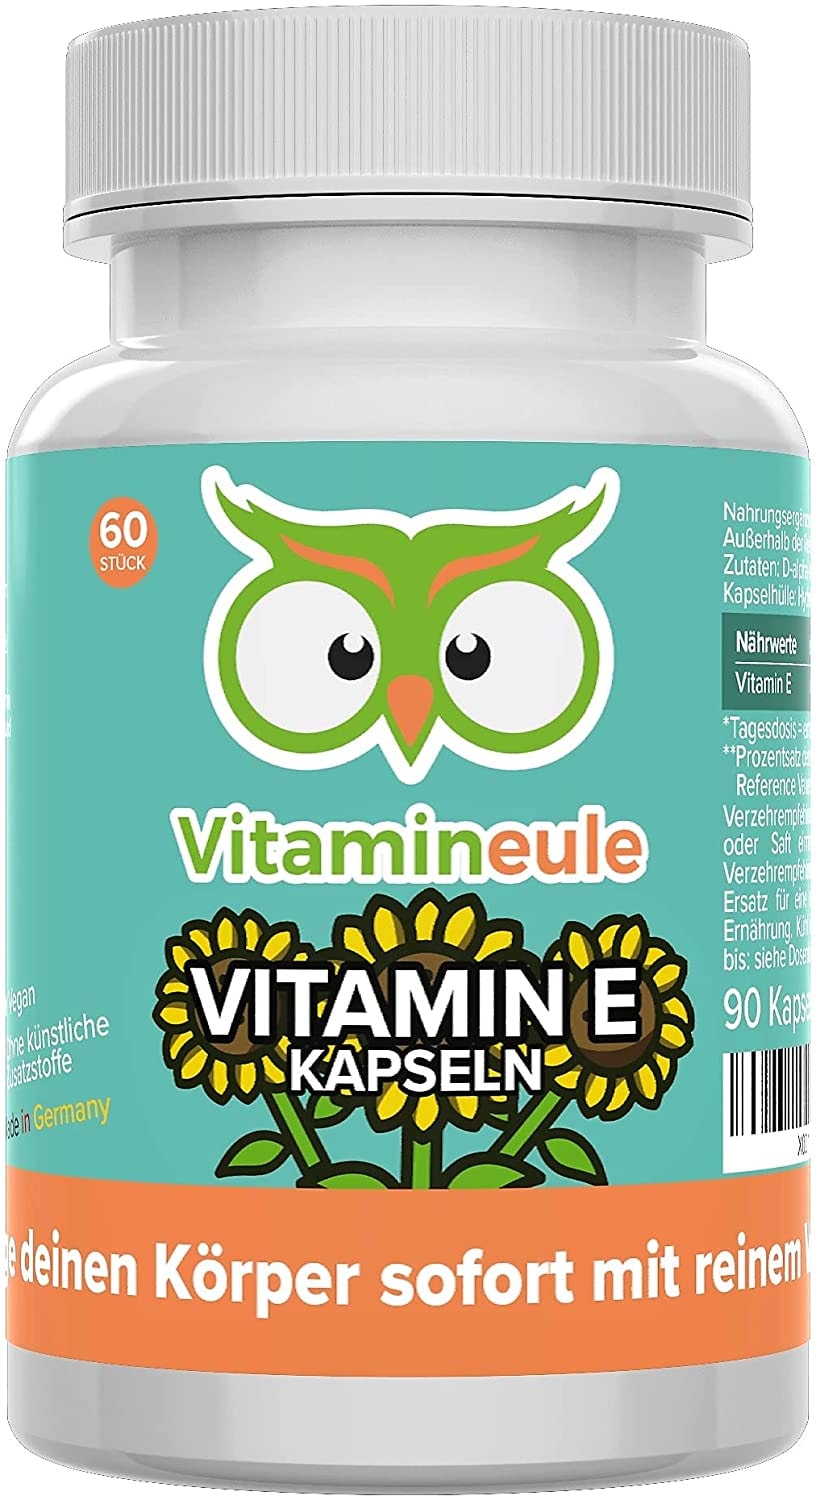 Vitamineule Vitamin E Kapseln - hochdosiert, natürlich & vegan - 100 mg / 150 i.E. - ohne künstliche Zusatzstoffe - Qualität aus Deutschland - kleine Vitamin E Kapseln statt große Tabletten - Vitamineule®